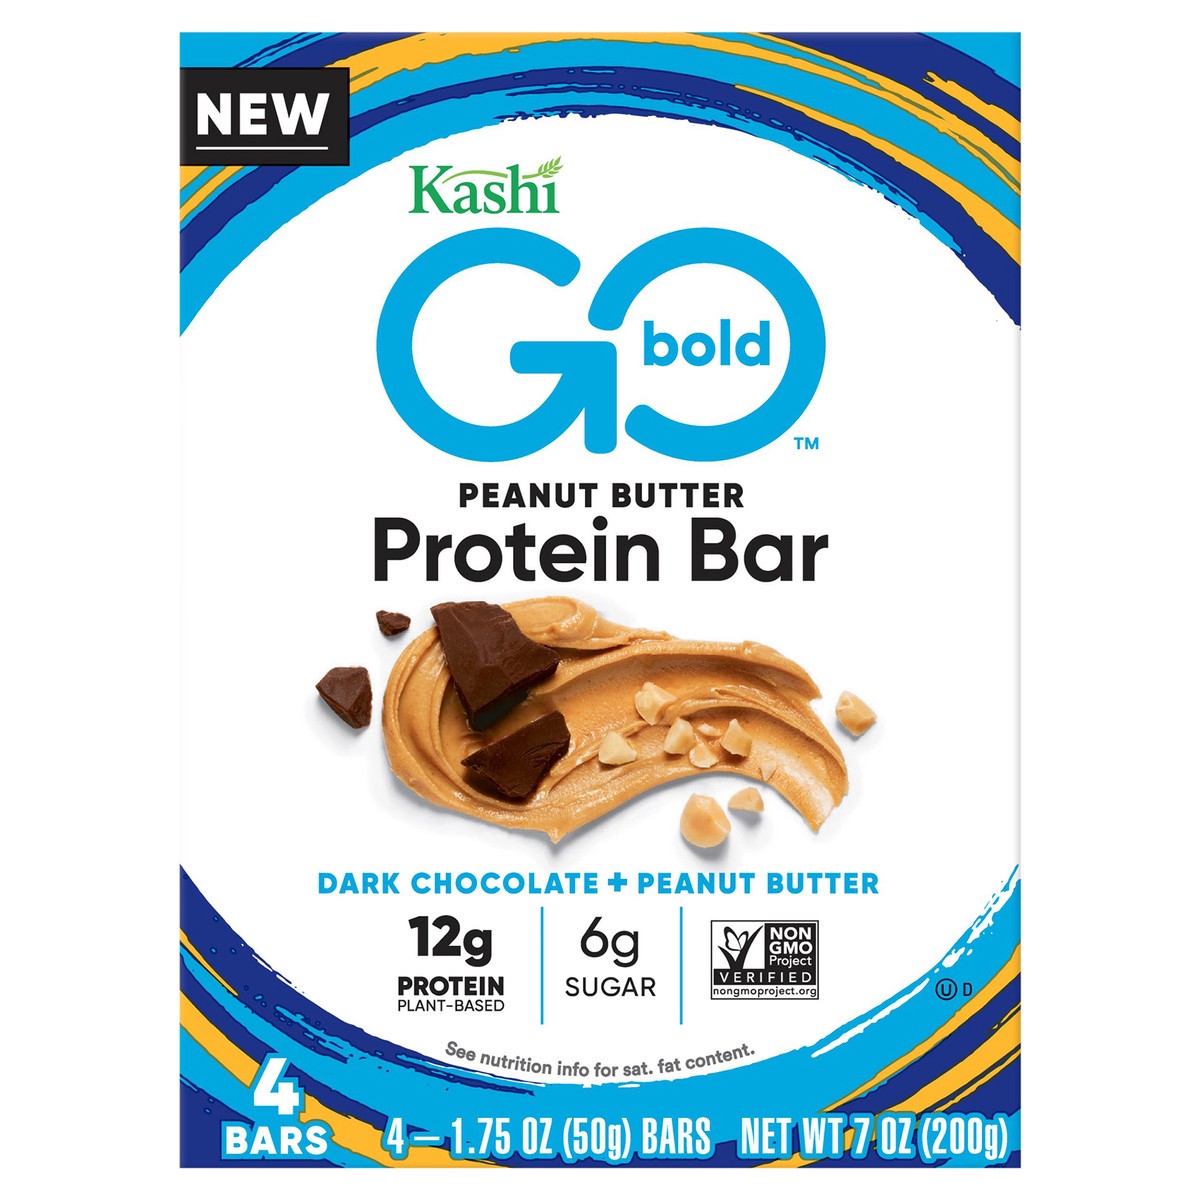 slide 1 of 10, Kashi Go Bold Peanut Butter Protein Bar 4 - 1.75 oz Bars, 4 ct